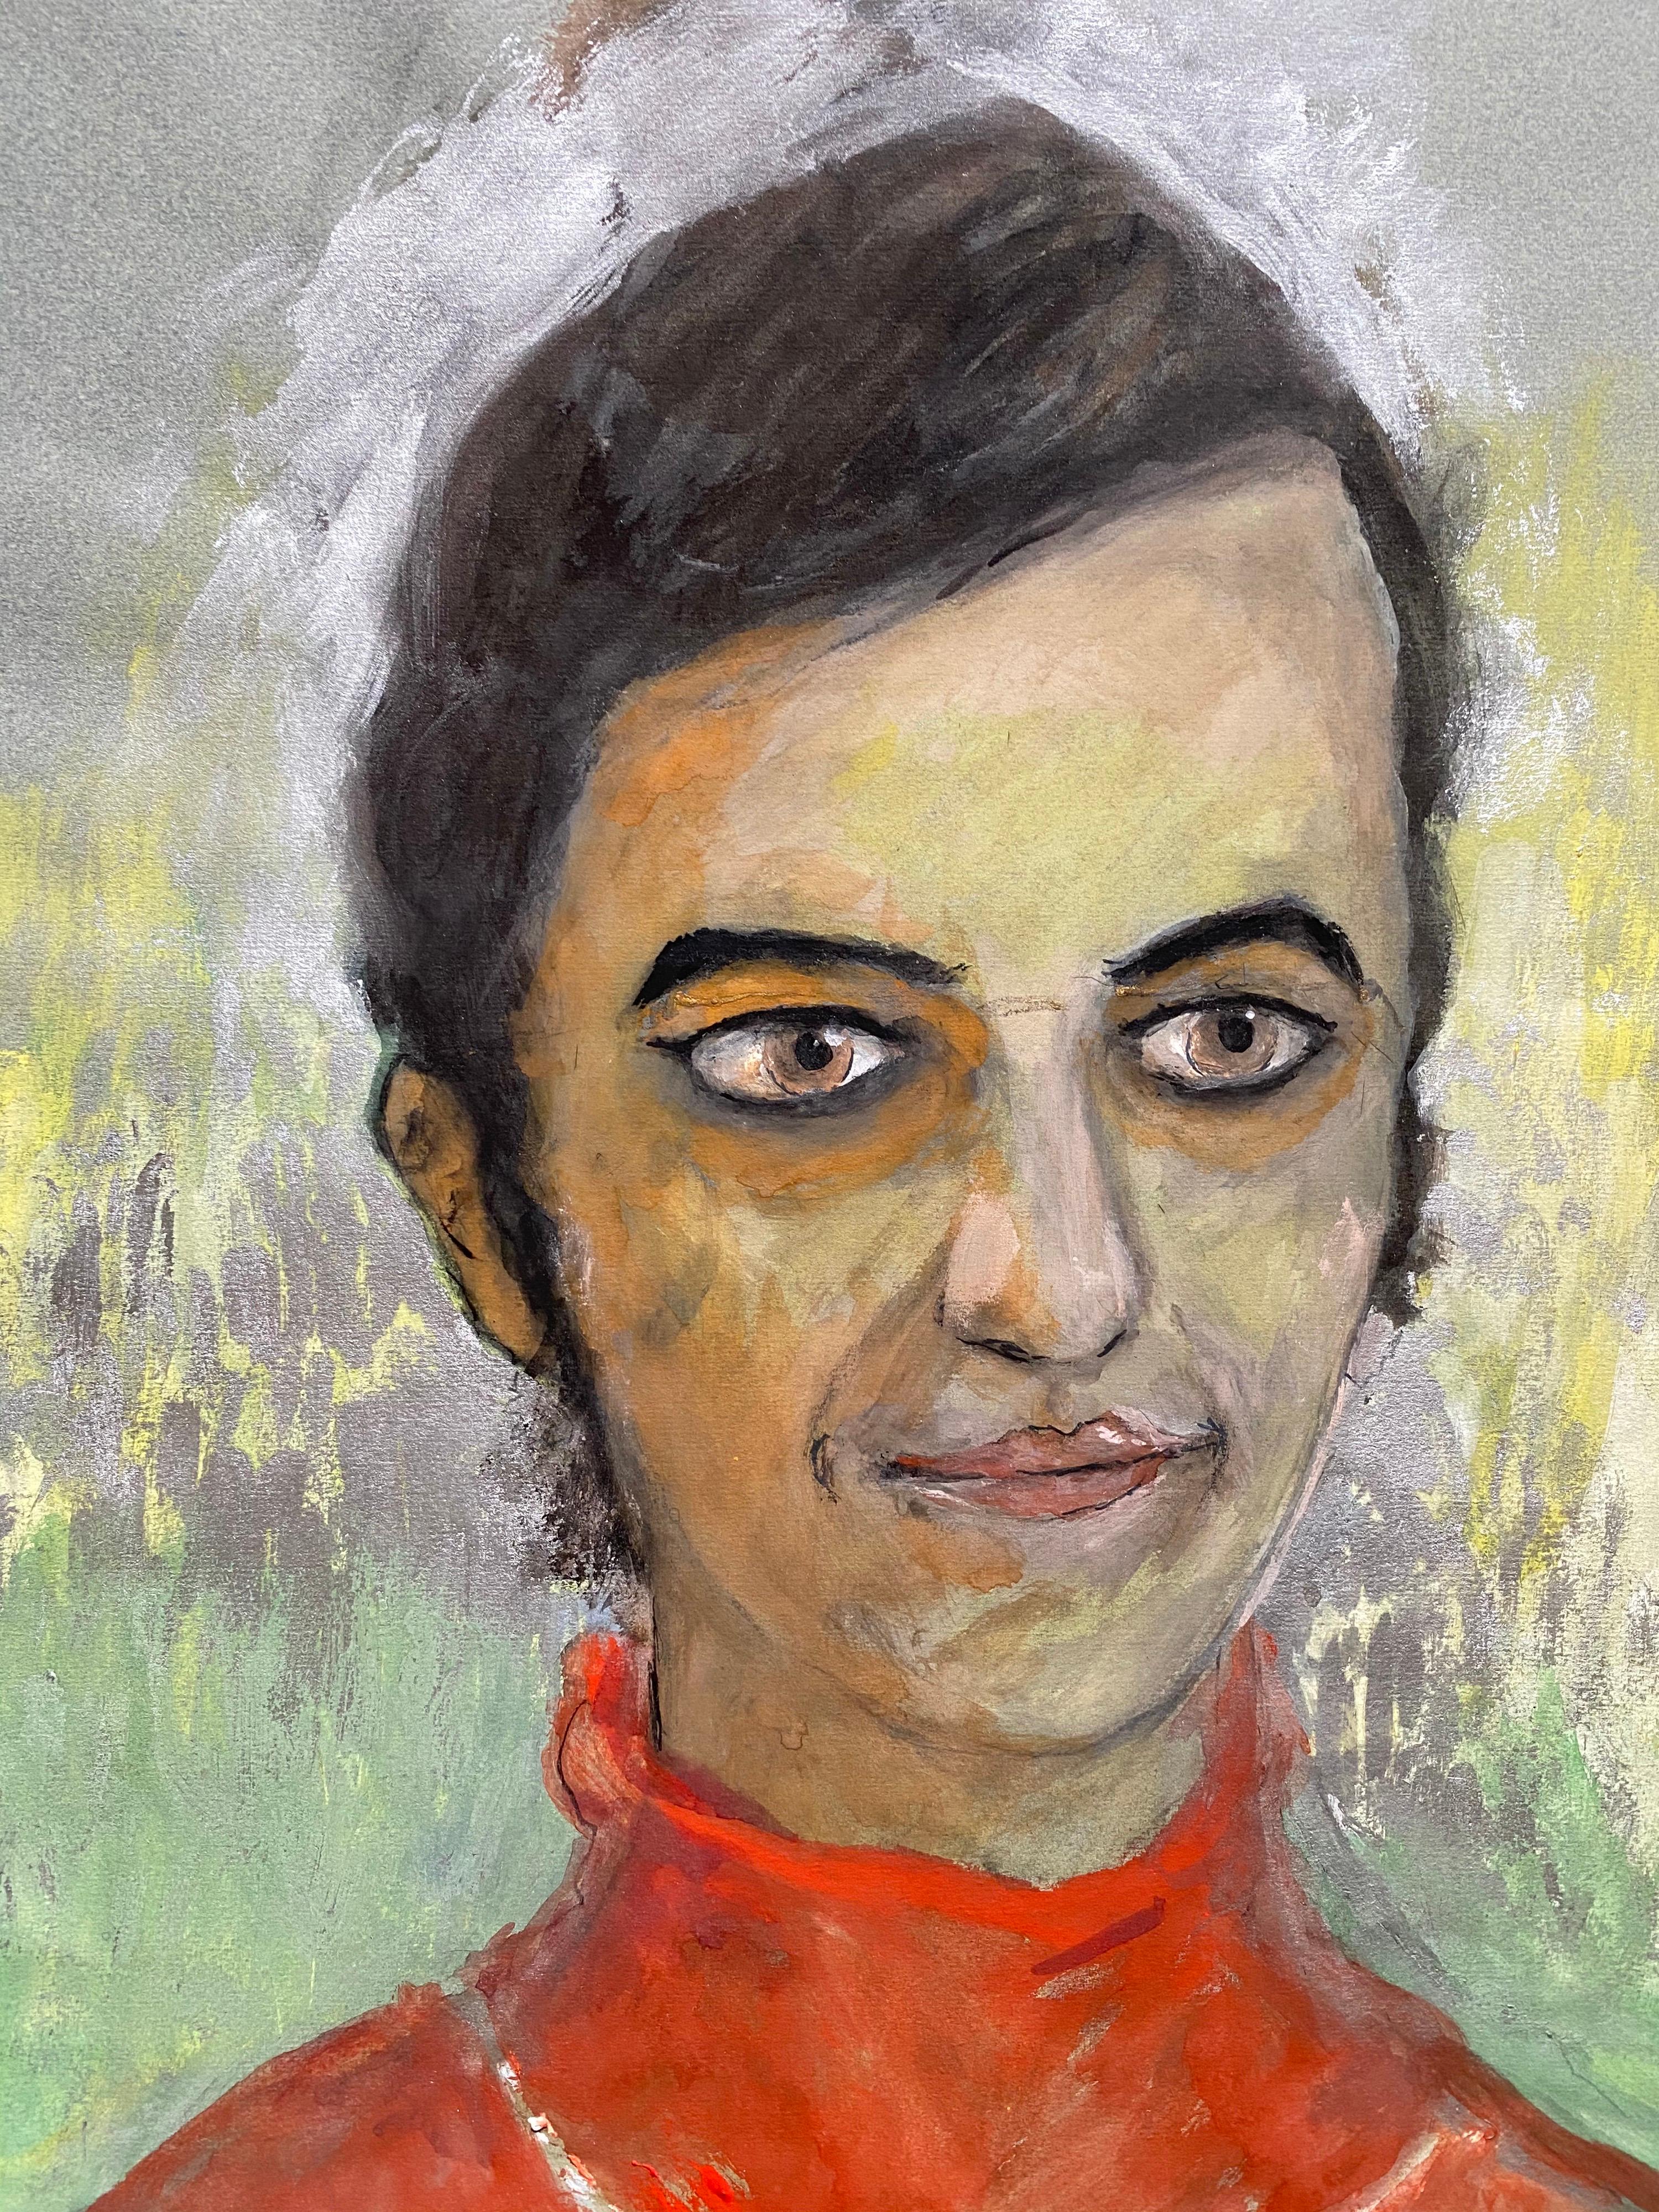 Französisches Porträt einer weichen Dame aus den 1960er Jahren in Orange/Rot-Karikatur (Impressionismus), Painting, von Unknown